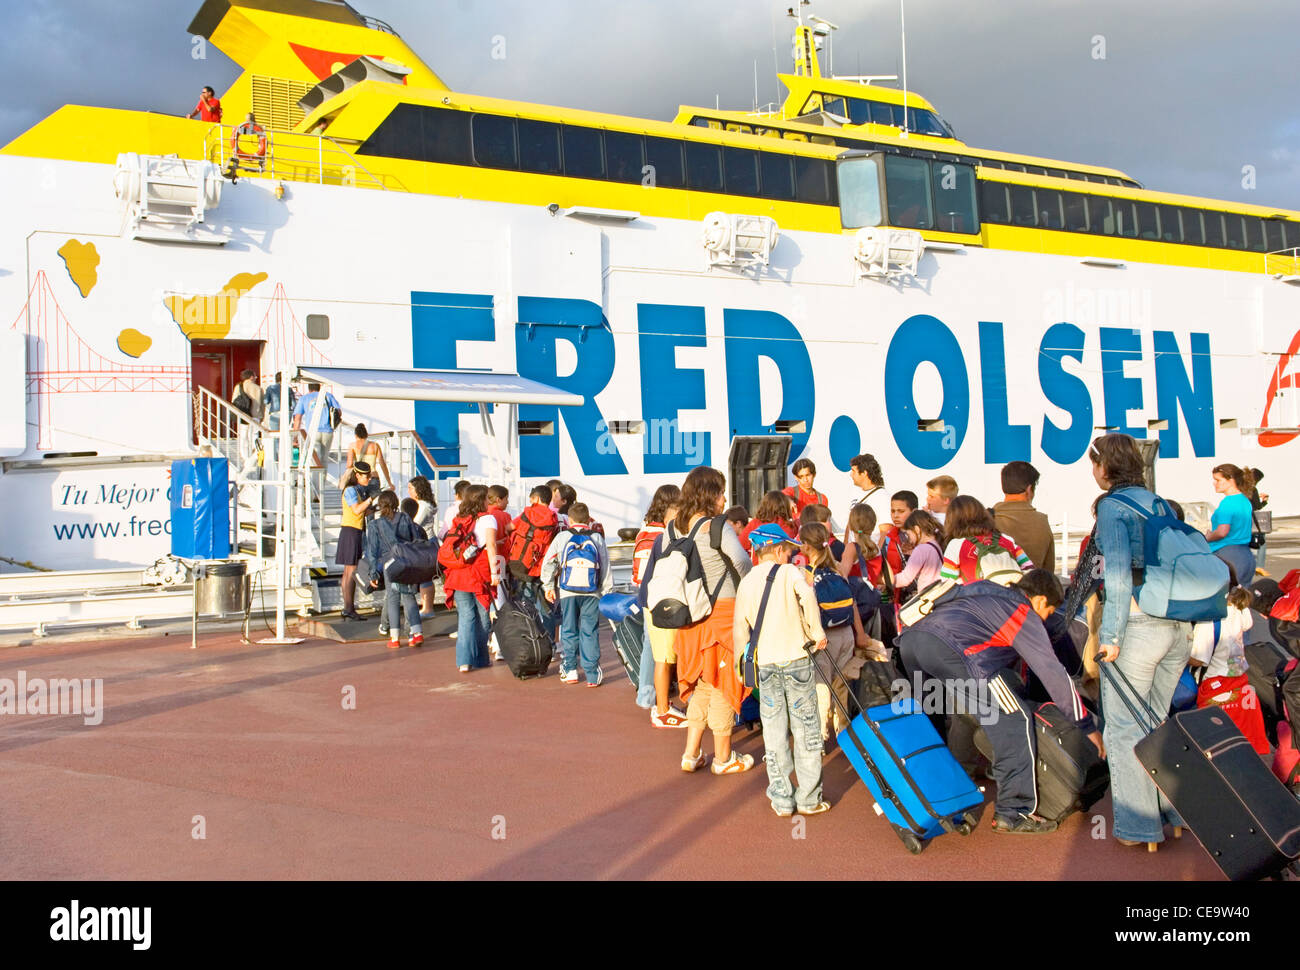 Los pasajeros que abordan la línea de Fred Olsen Express Benchijigua car ferry de pasajeros en el puerto de Los Cristianos, Tenerife, Islas Canarias Foto de stock